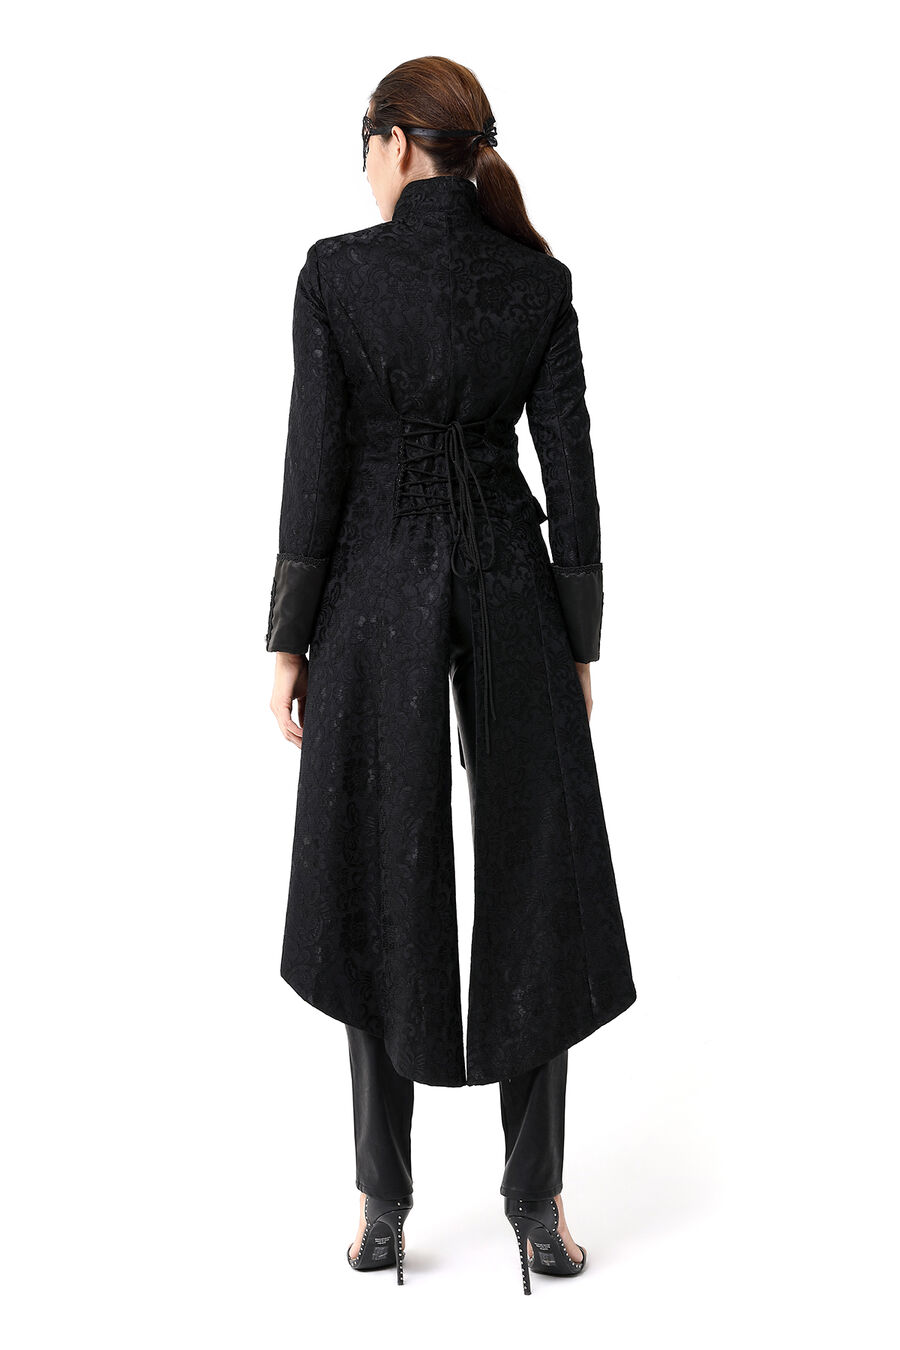 photo n°10 : Manteau long gothique en dentelle femme